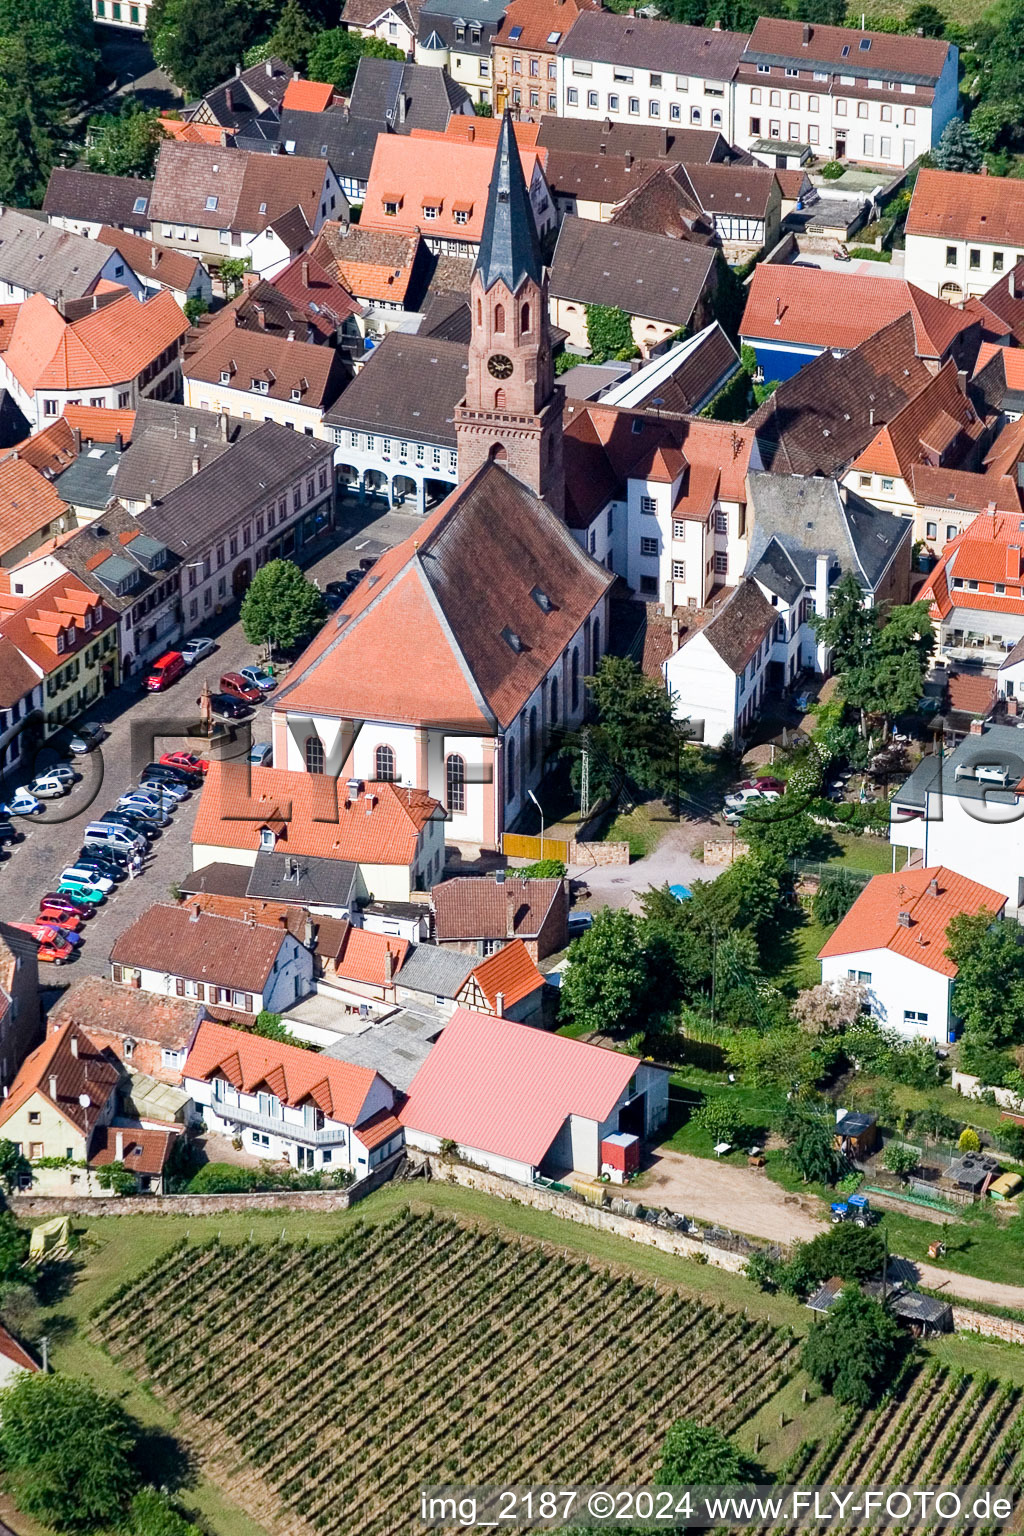 Photographie aérienne de Bâtiment d'église au centre du village à Maikammer dans le département Rhénanie-Palatinat, Allemagne